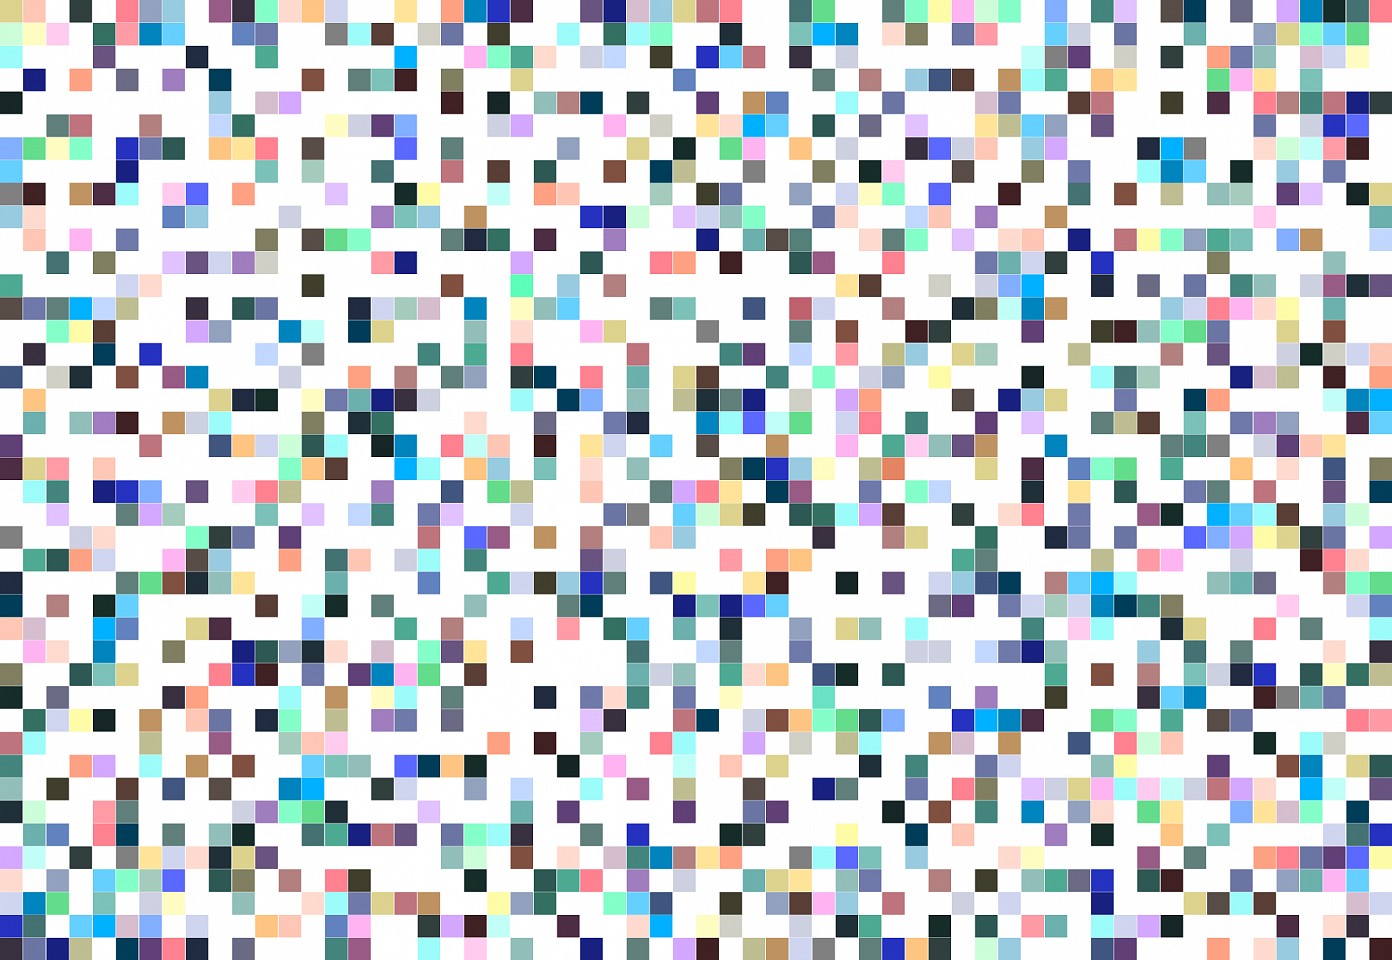 Dane Albert, Color Blocks #46, 2023
Acrylic on canvas (Concept), 48 x 72 in. (121.9 x 182.9 cm)
Series of colored blocks in multiple configurations
DA.cb-2023-046